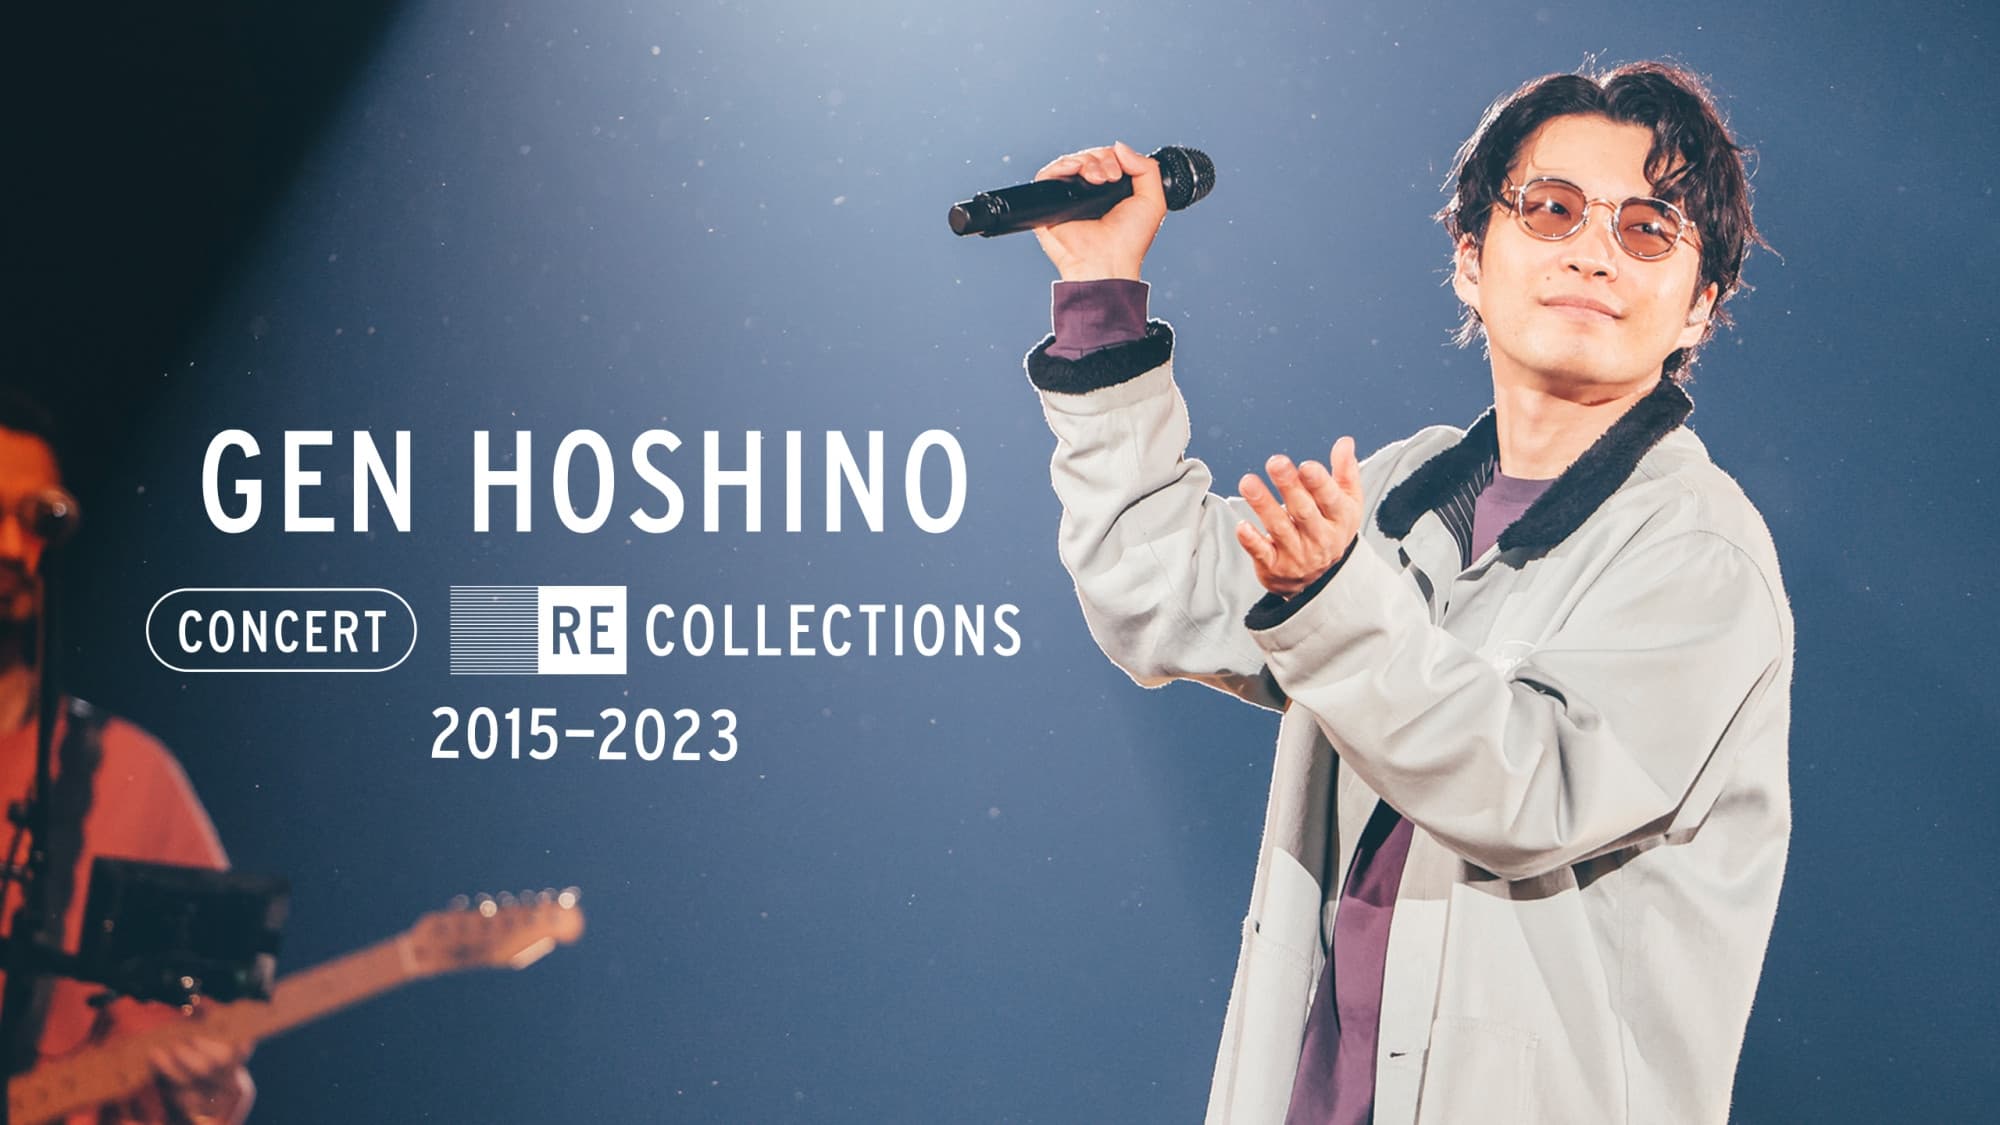 Poster Phim Hoshino Gen: Tuyển tập hòa nhạc 2015-2023 (Gen Hoshino Concert Recollections 2015-2023)